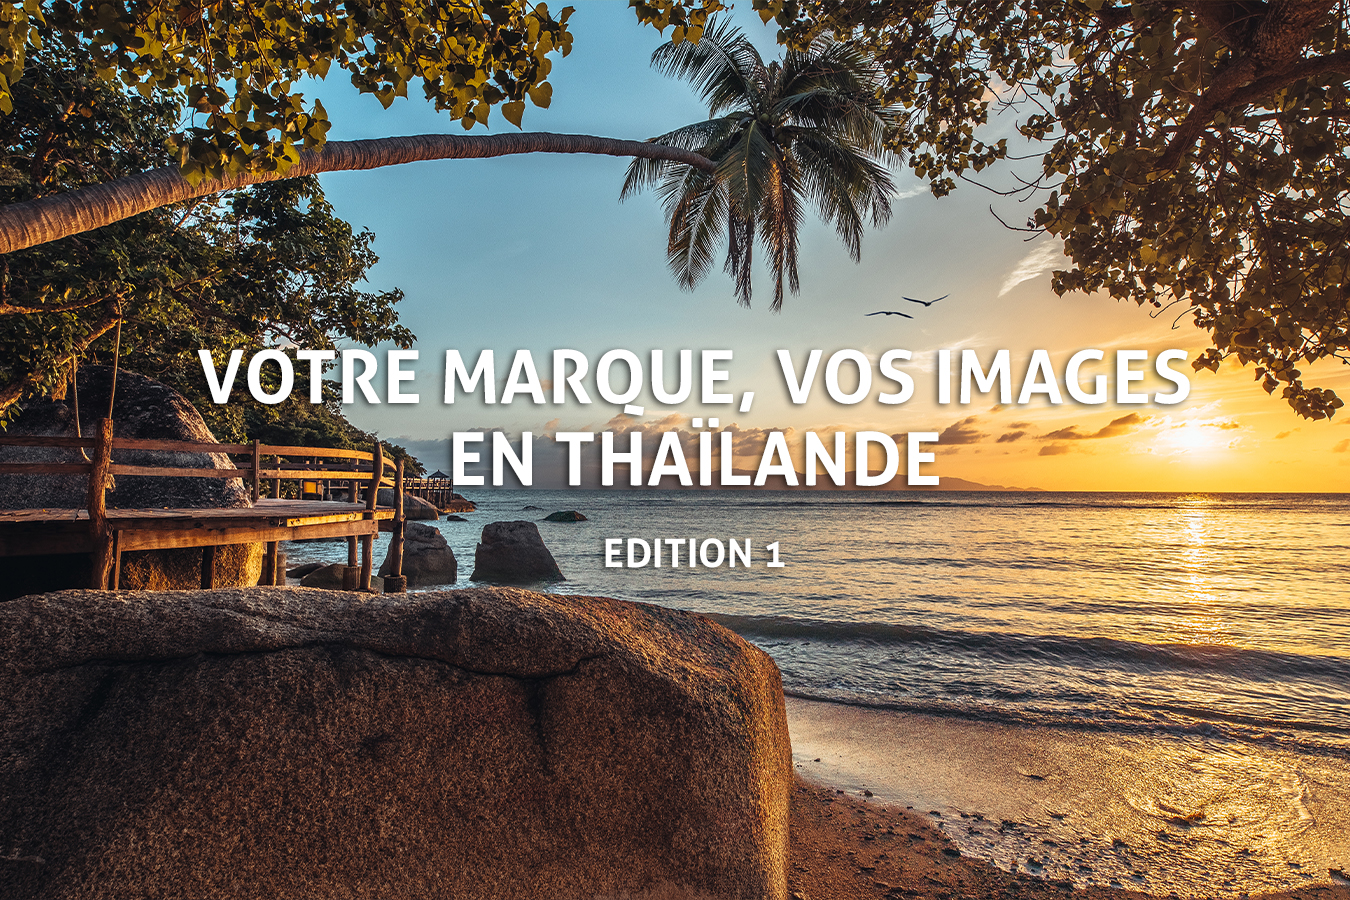 Photographe Marque Thailande